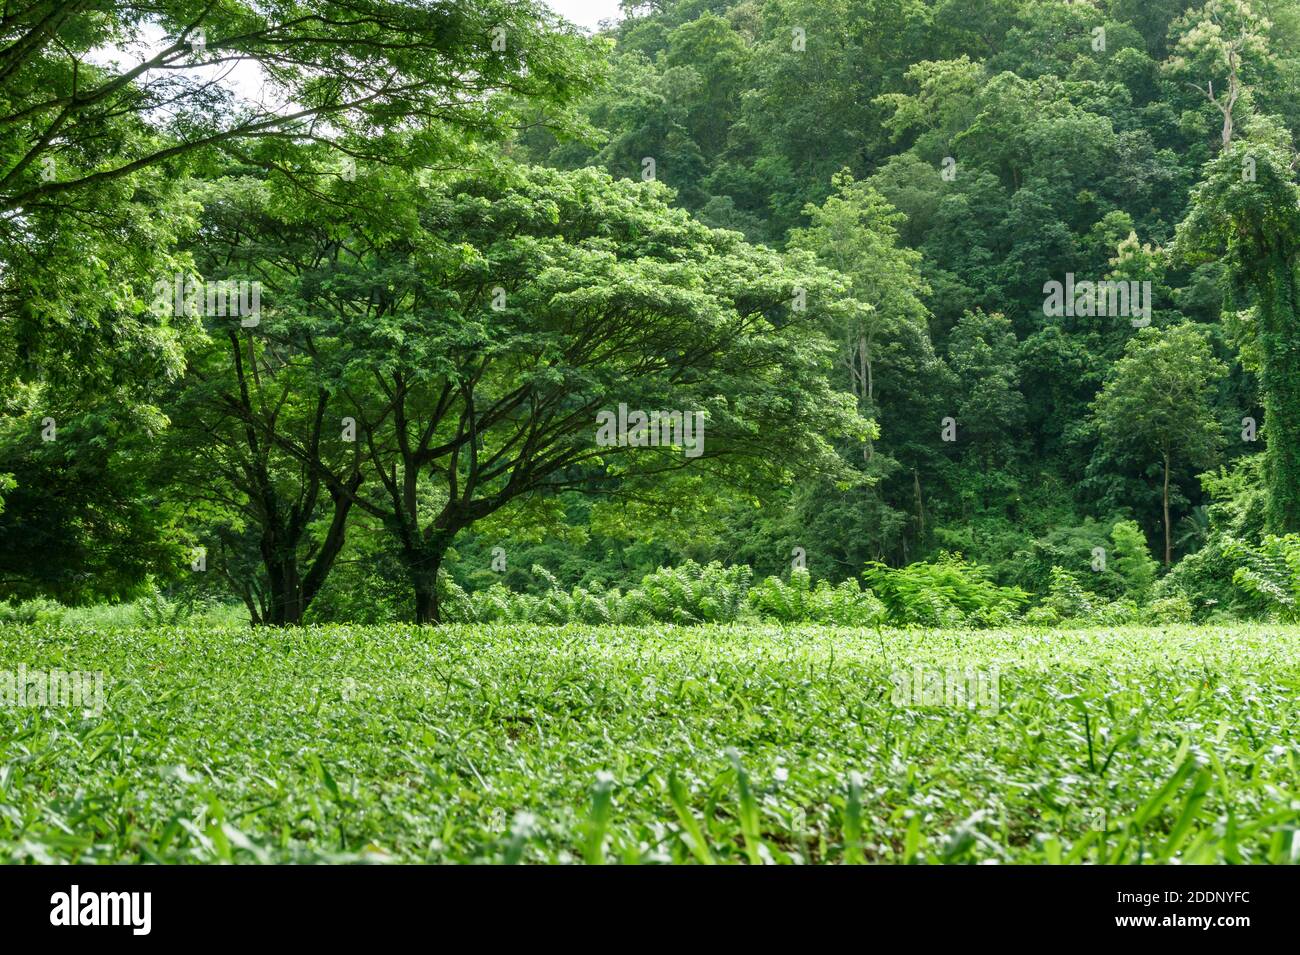 verde césped paisaje con sombra de árboles en el parque Foto de stock